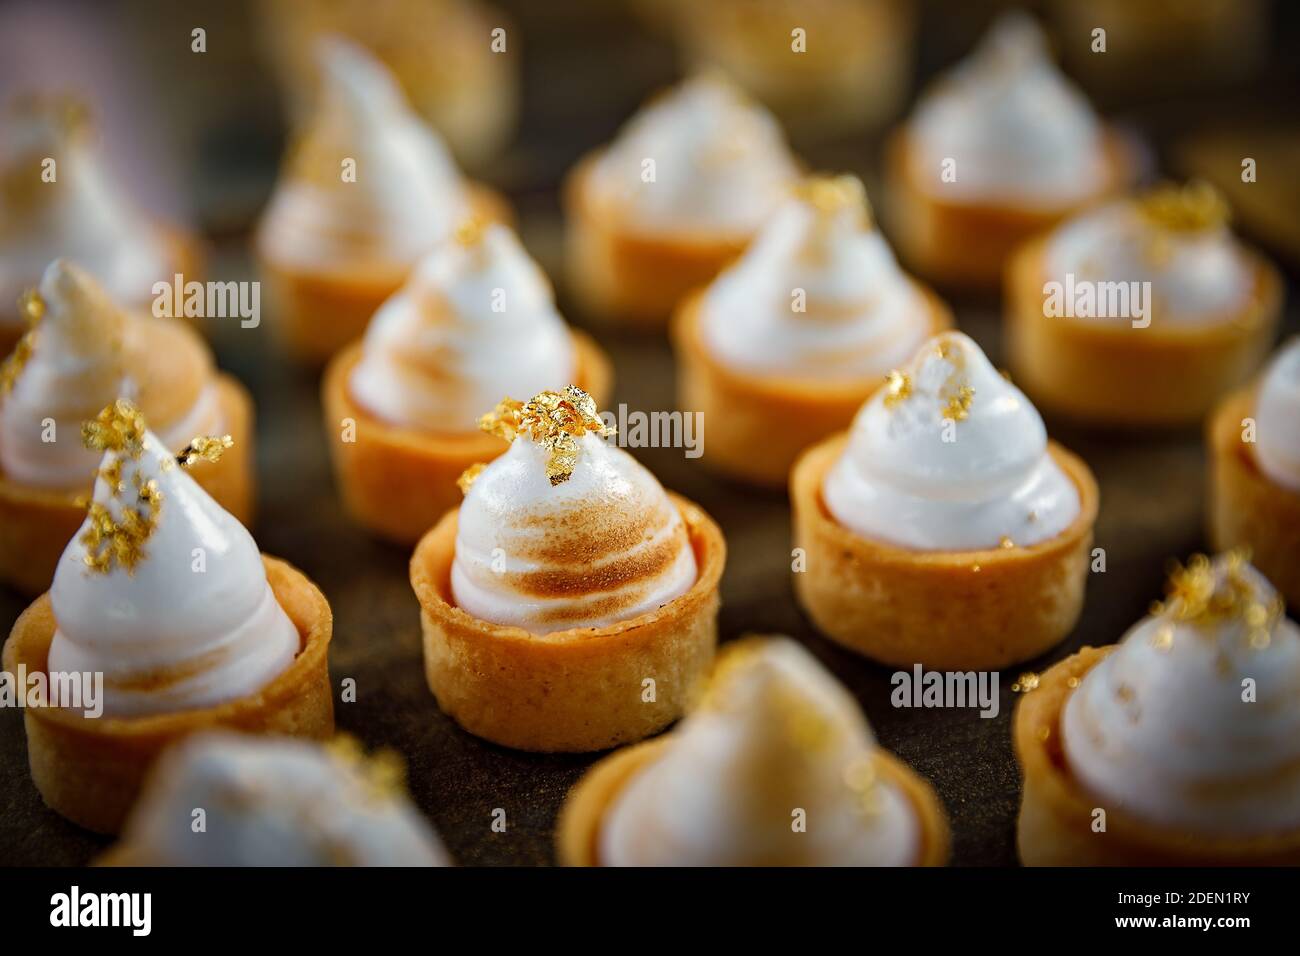 Gros plan de petites tartes à la meringue au citron avec de l'or comestible Banque D'Images